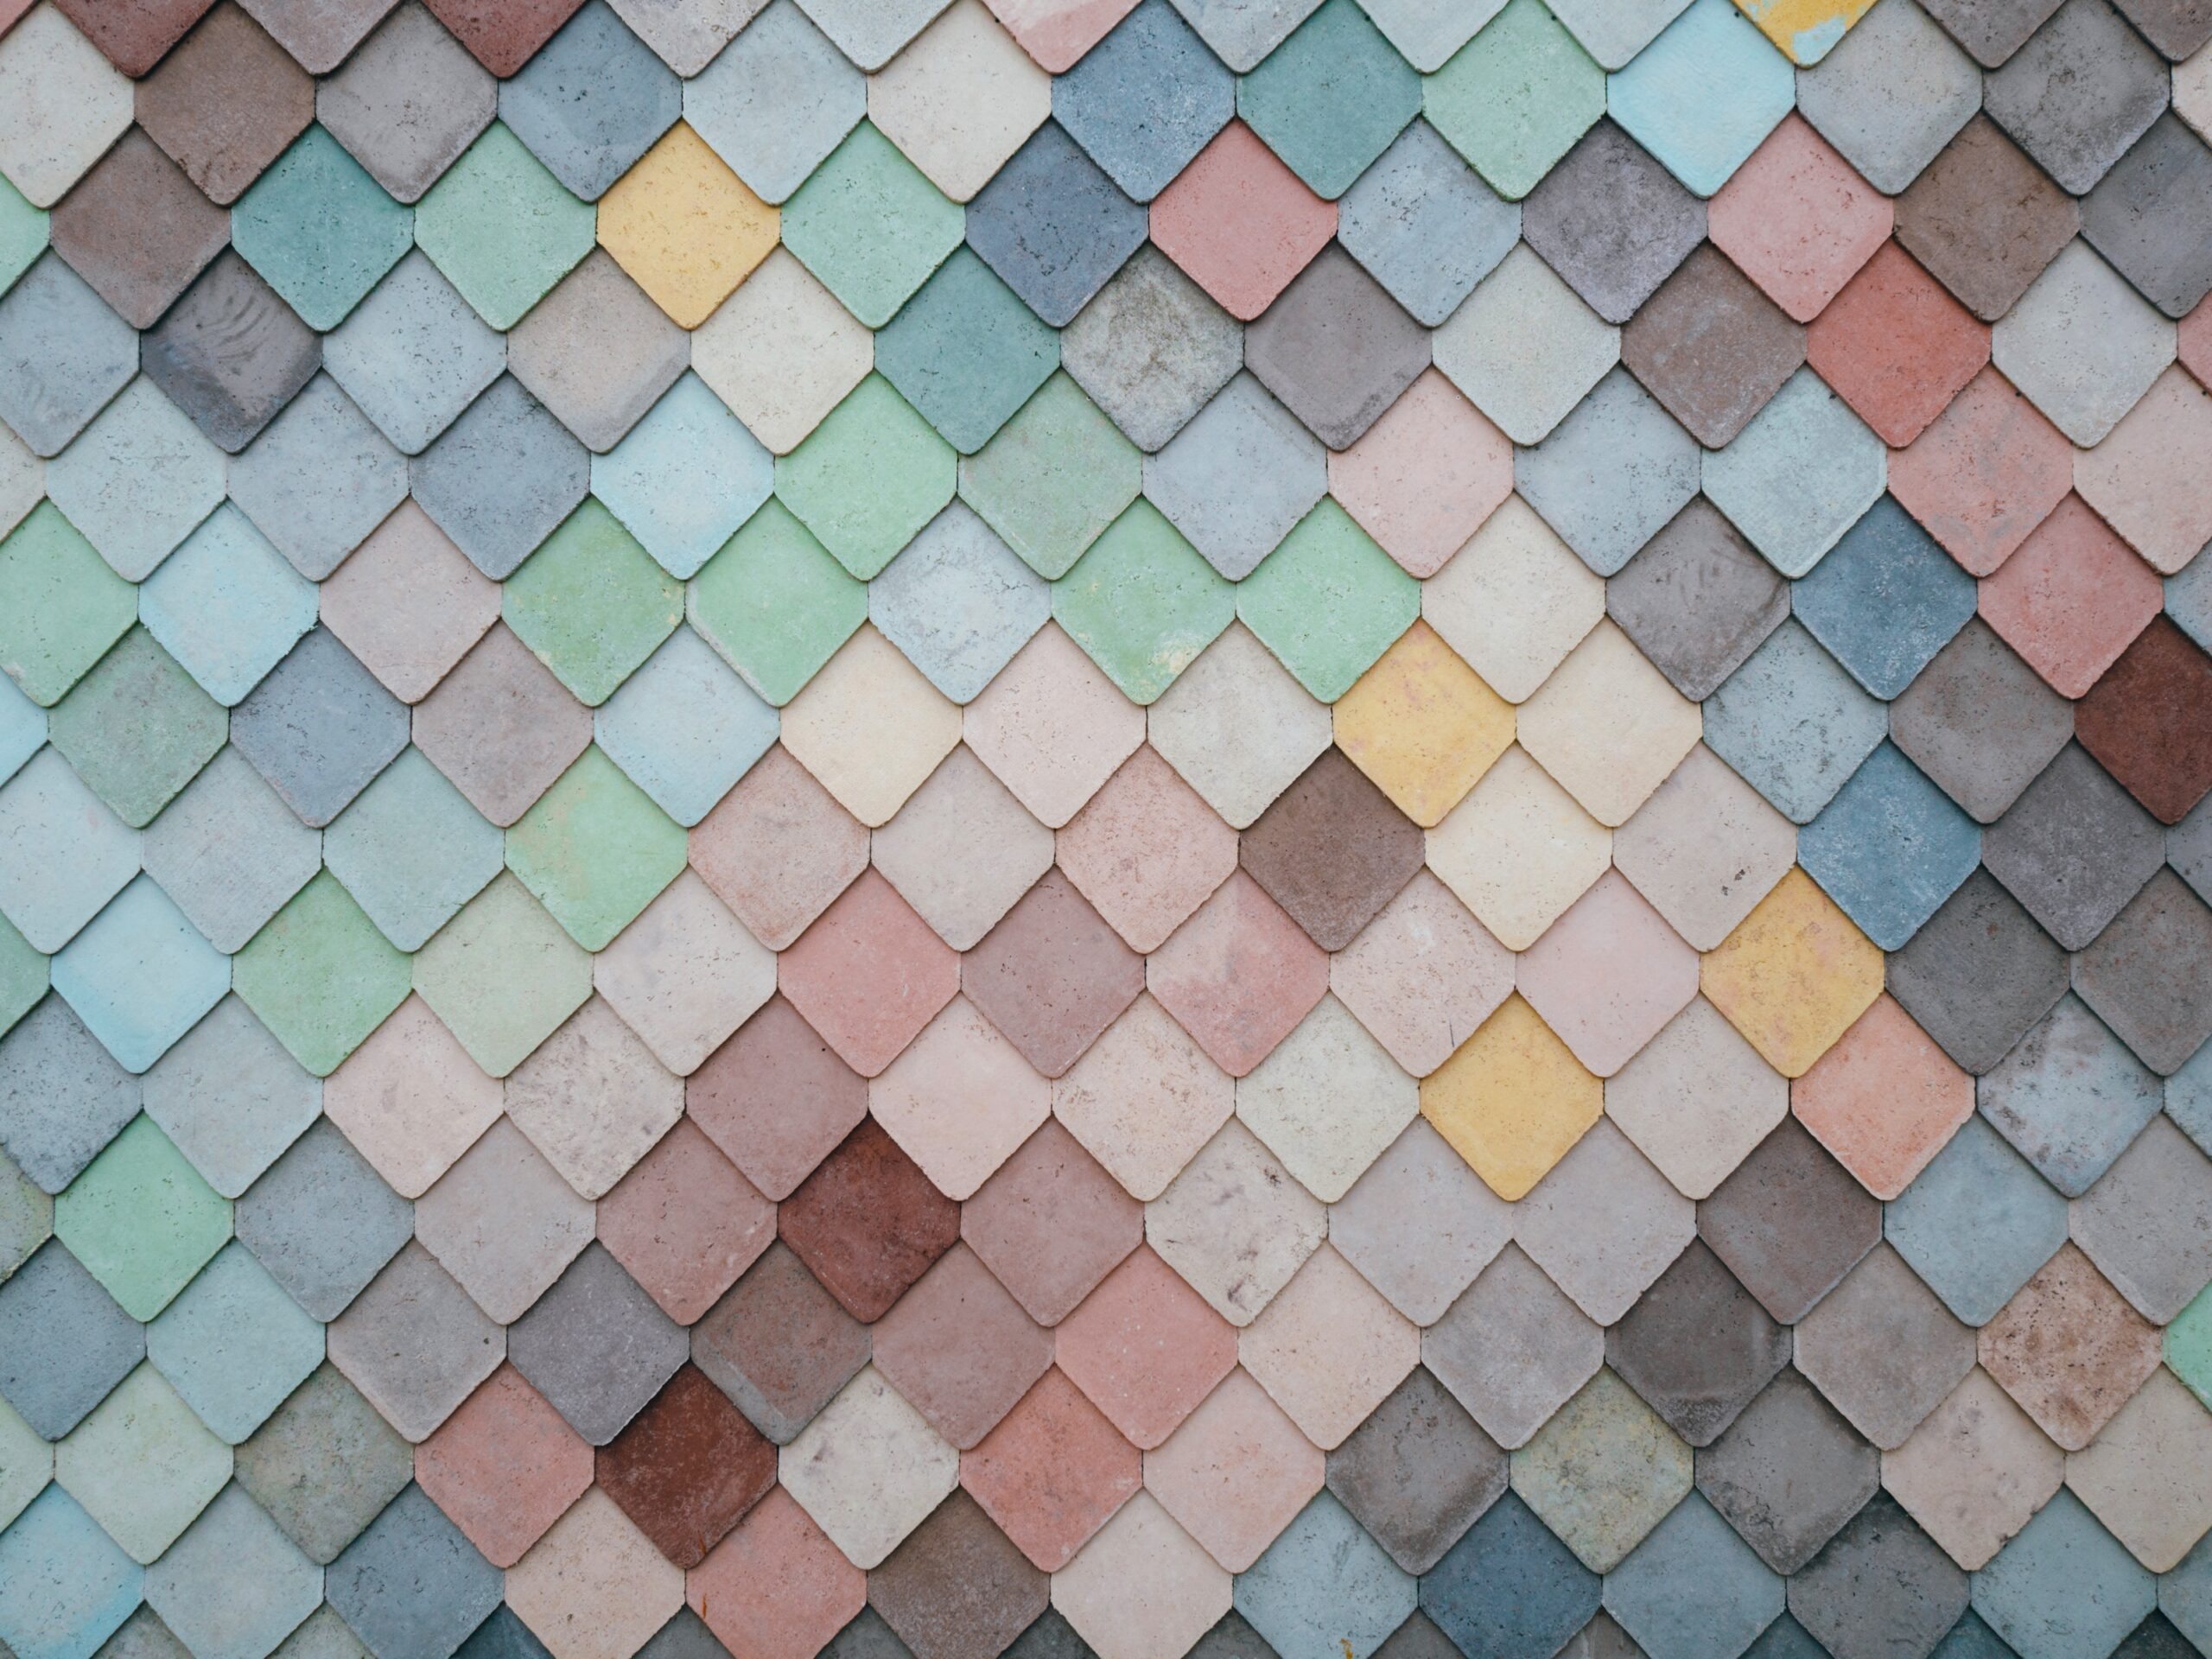 Tiles in Stratford, London, United Kingdom